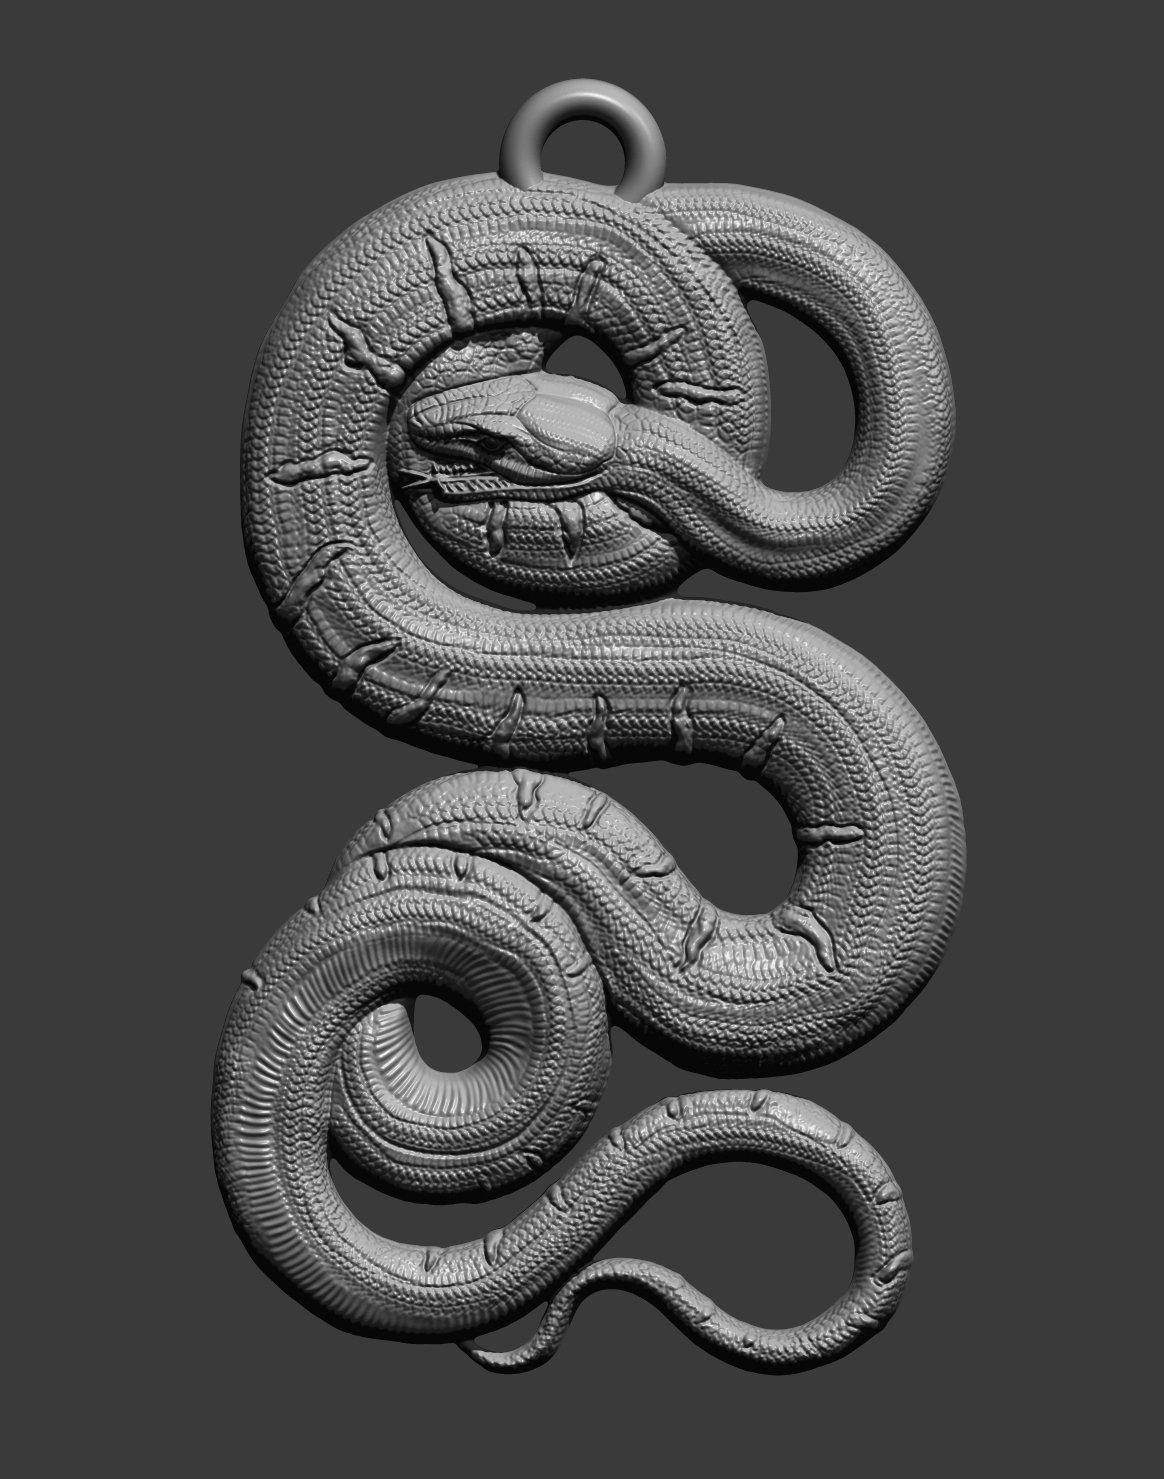 snake 3D model 3D printable